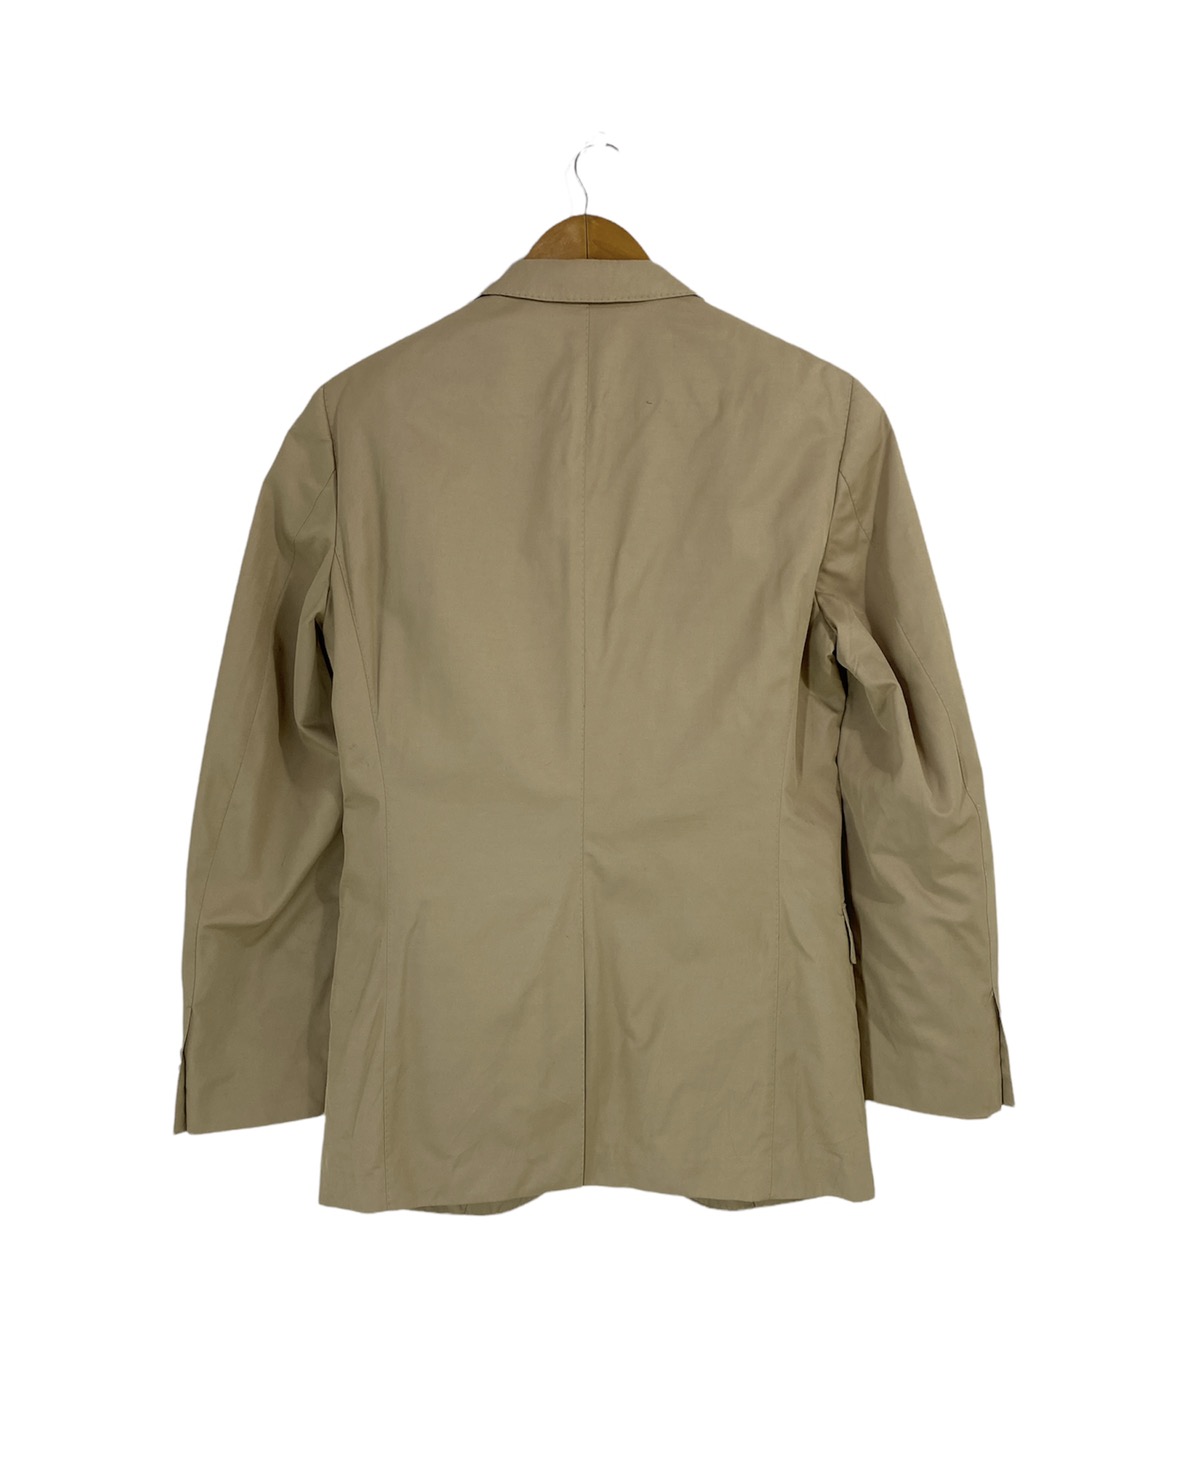 Jil Sander X Uniqlo Suit Jacket Design Two Button Design - 2